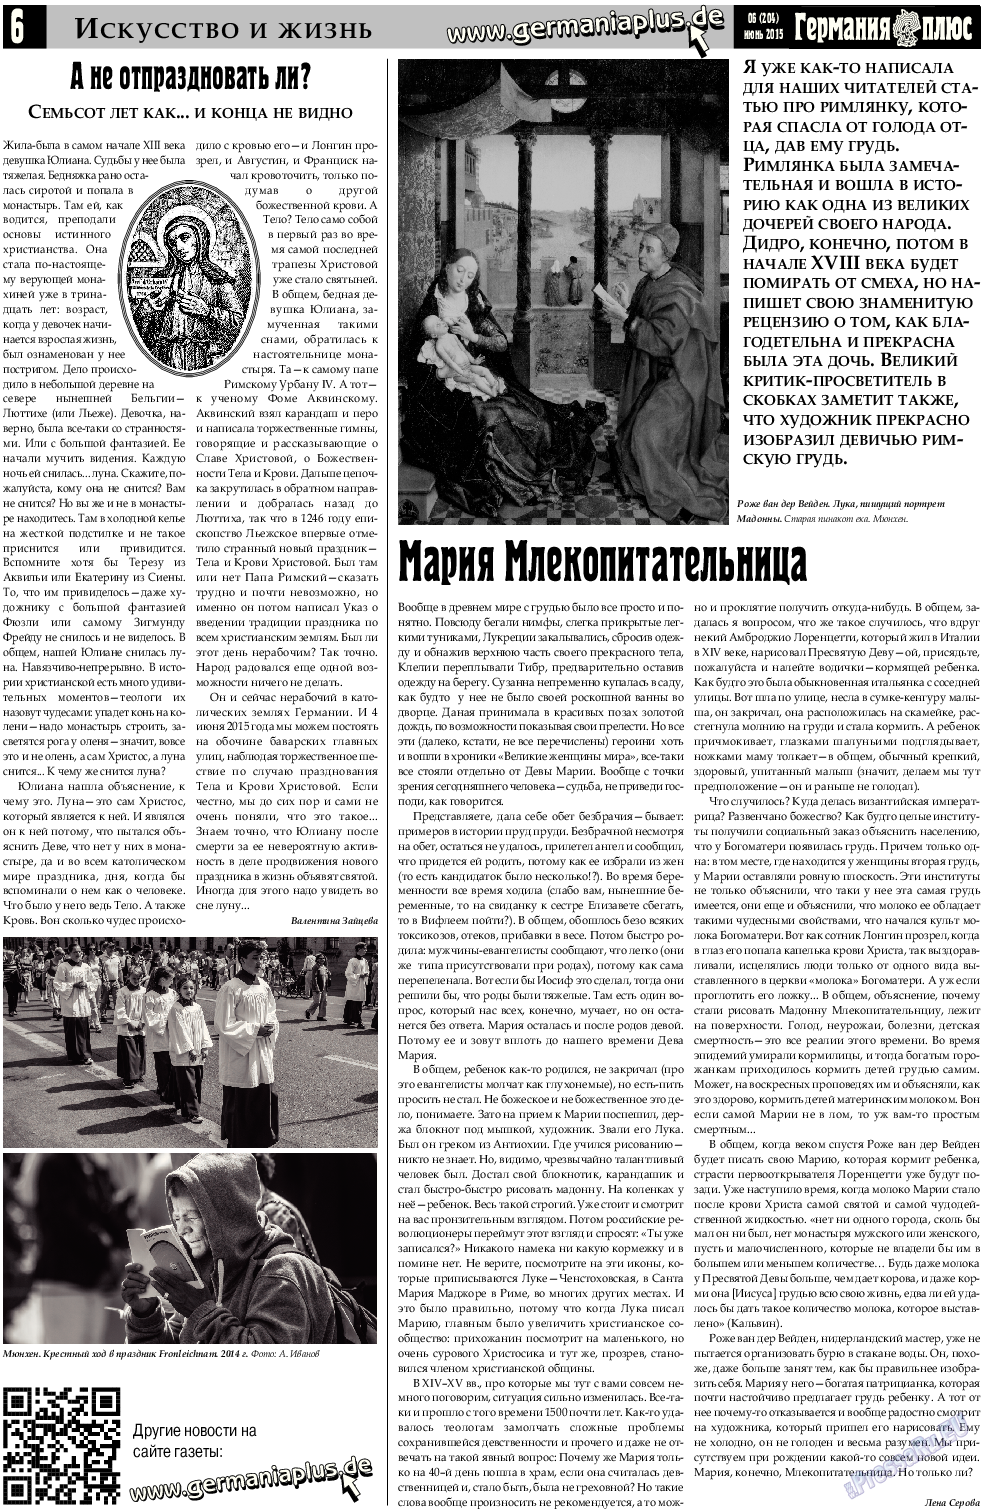 Германия плюс (газета). 2015 год, номер 6, стр. 6